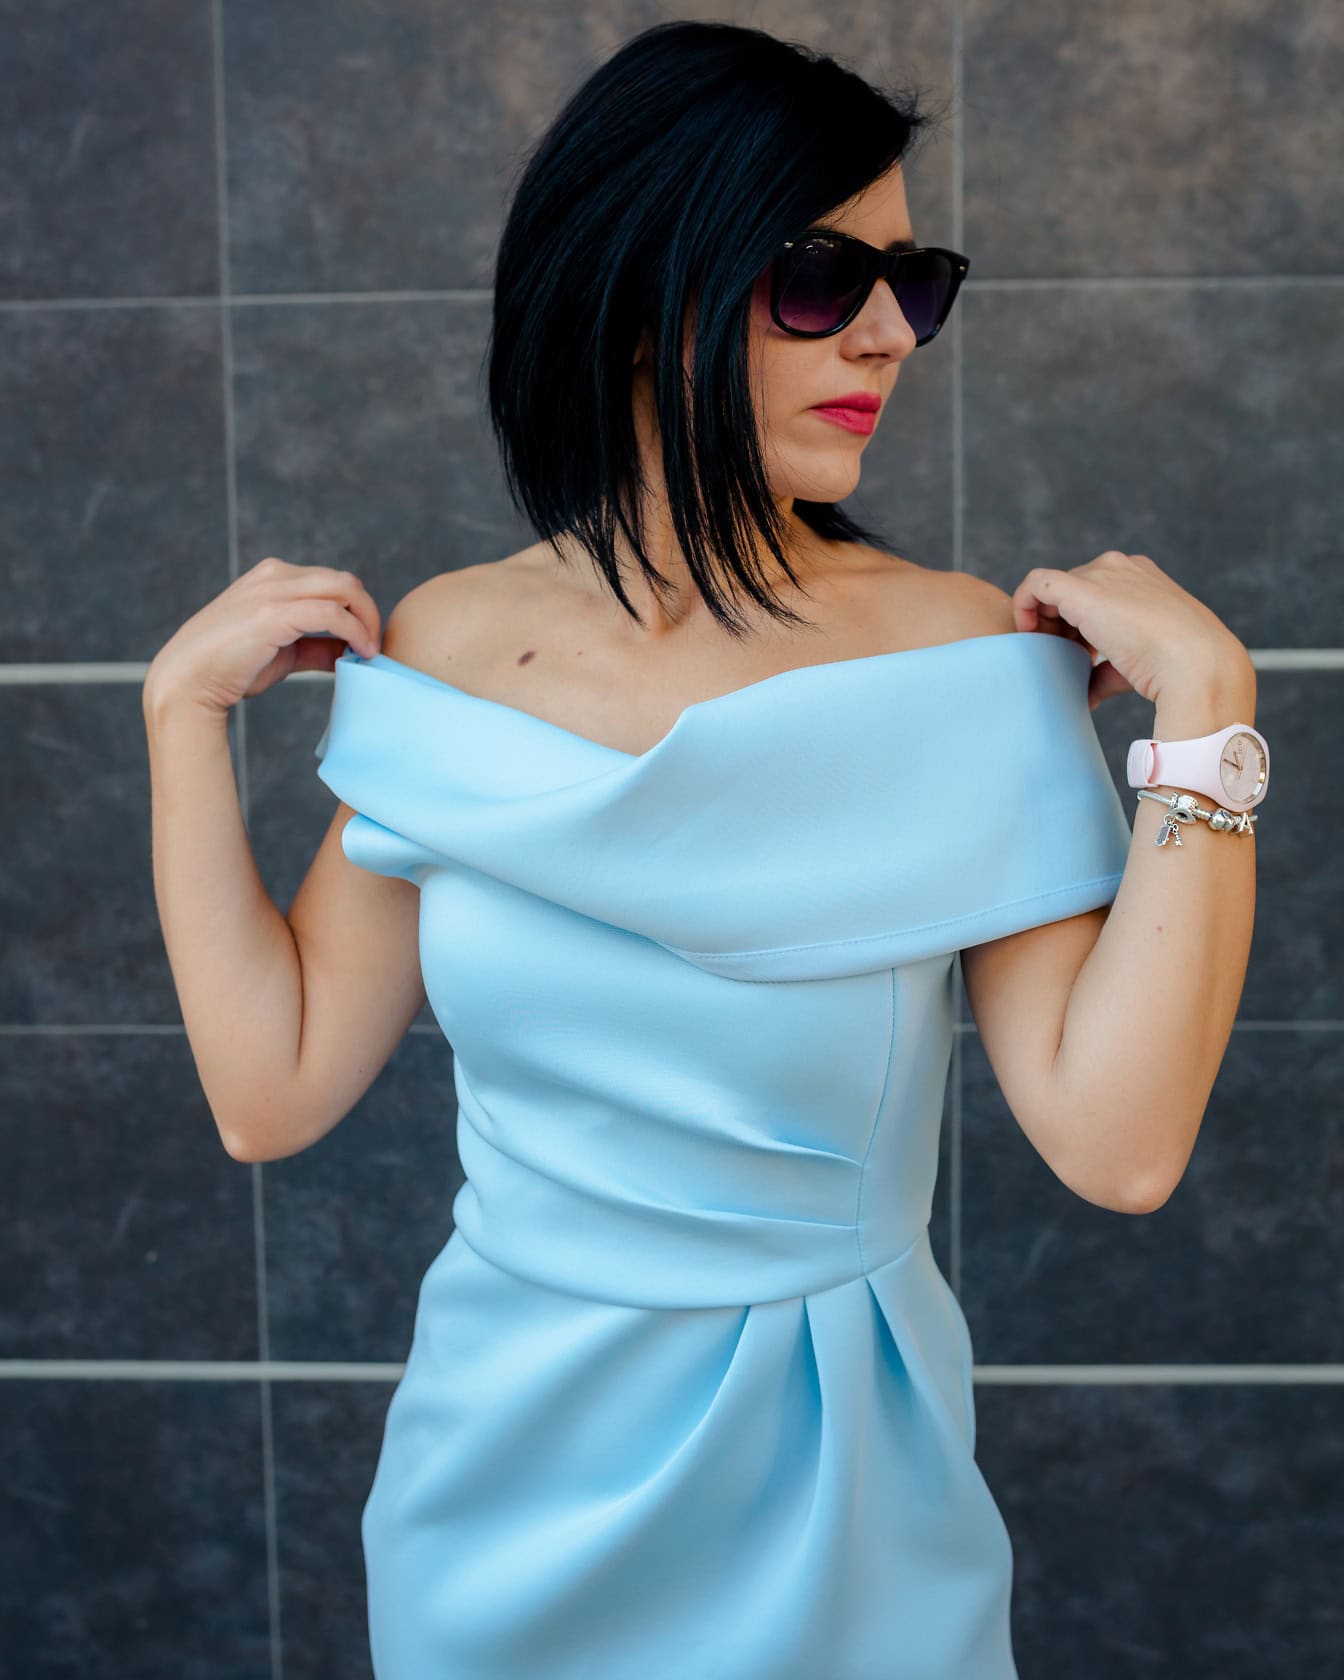 En kvinde bærer solbriller og poserer med hænderne på skuldrene, mens hun er iført en elegant blå kjole